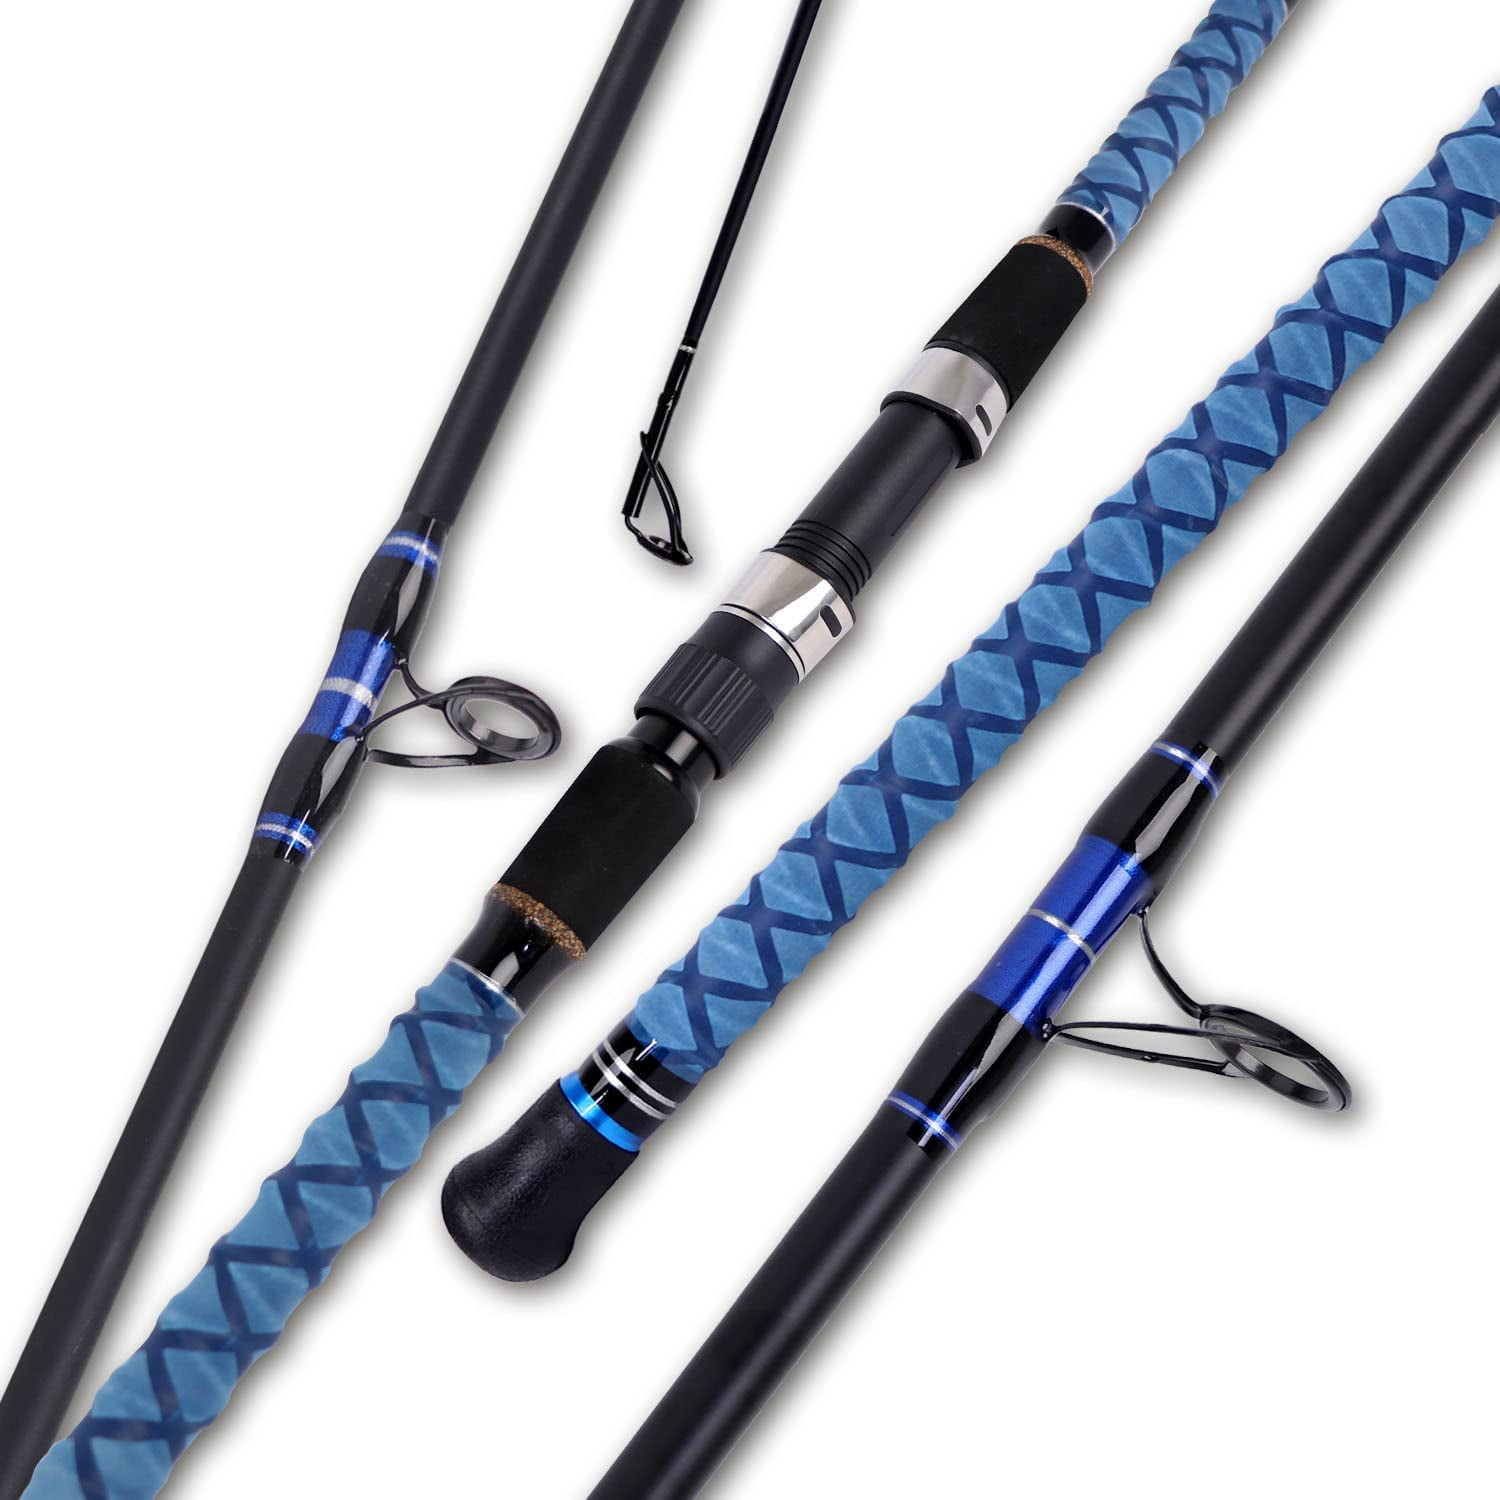 Fiblink Surf Spinning & Casting Fishing Rod 2-Piece & 3-Piece & 4-Piece Carbon Fiber Travel Fishing Rod with Noctilucent Tip 